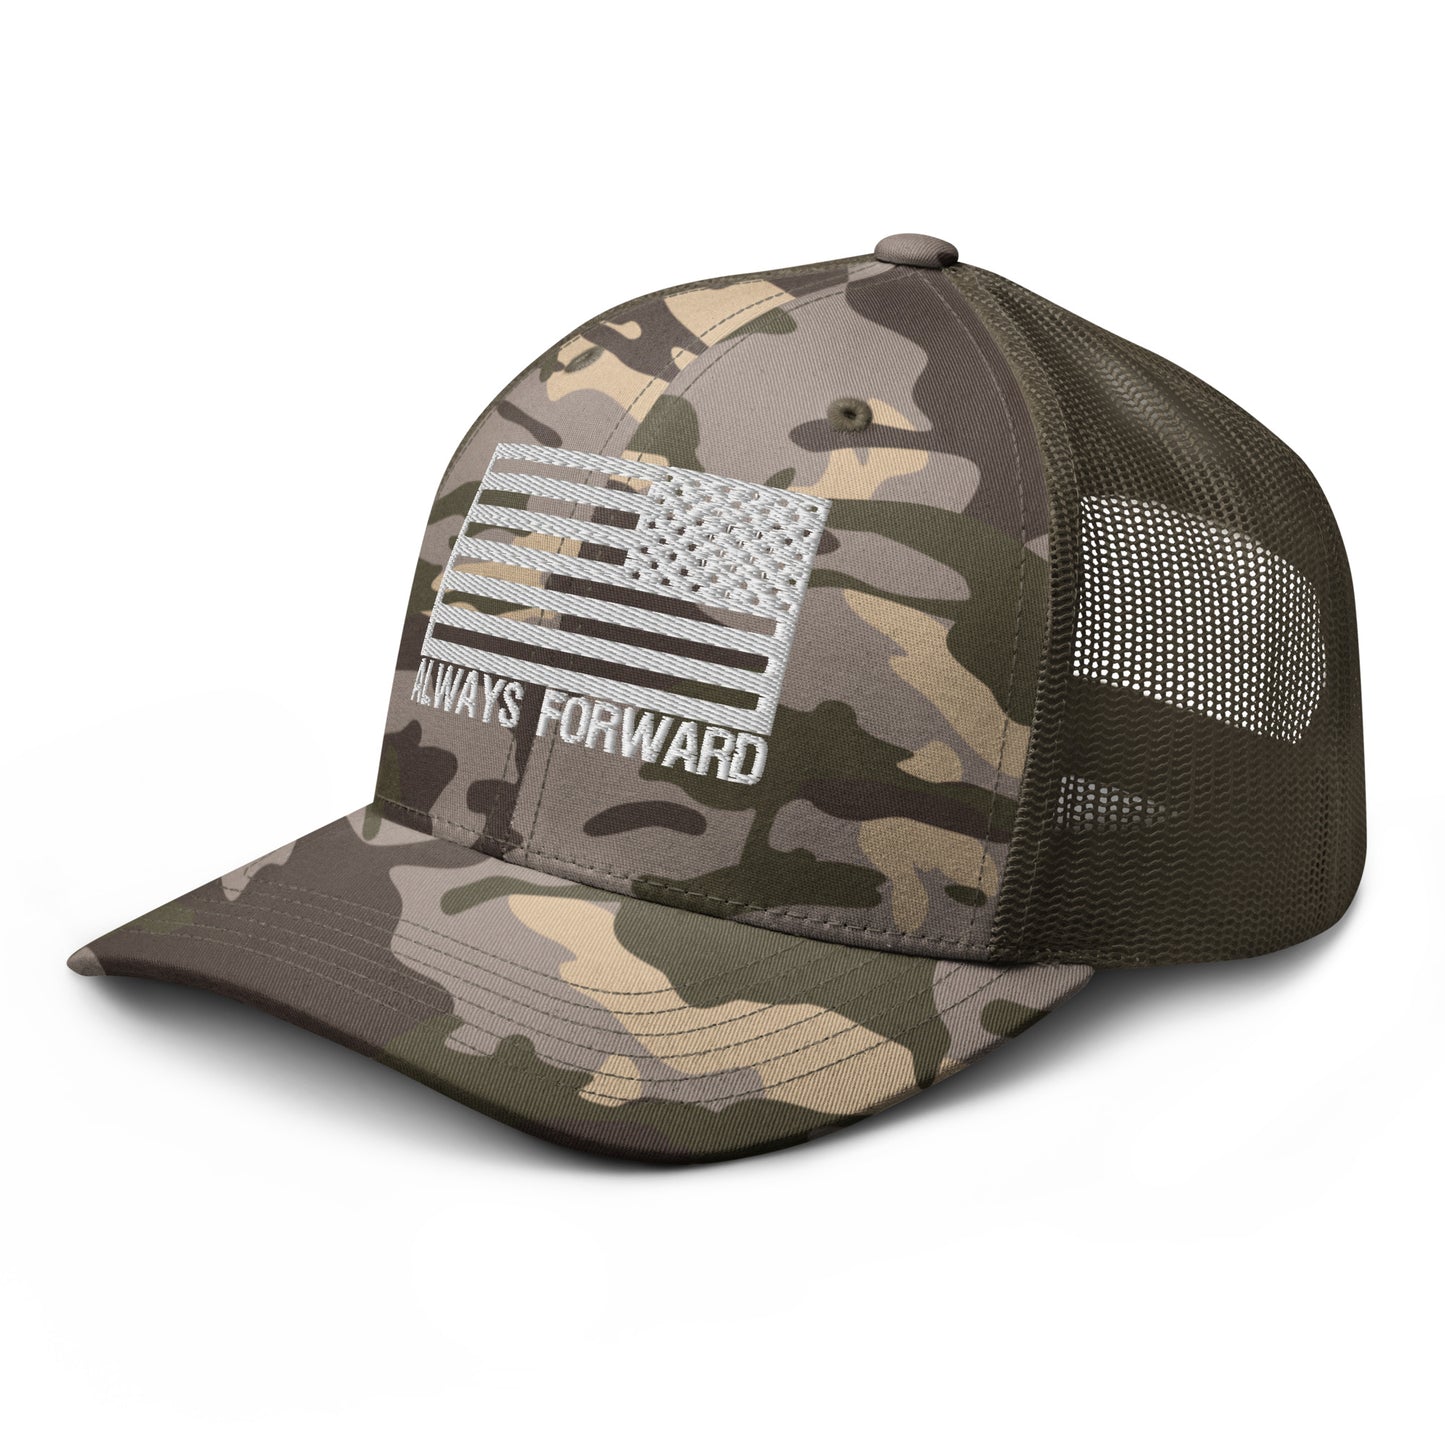 Always Forward Camouflage trucker hat